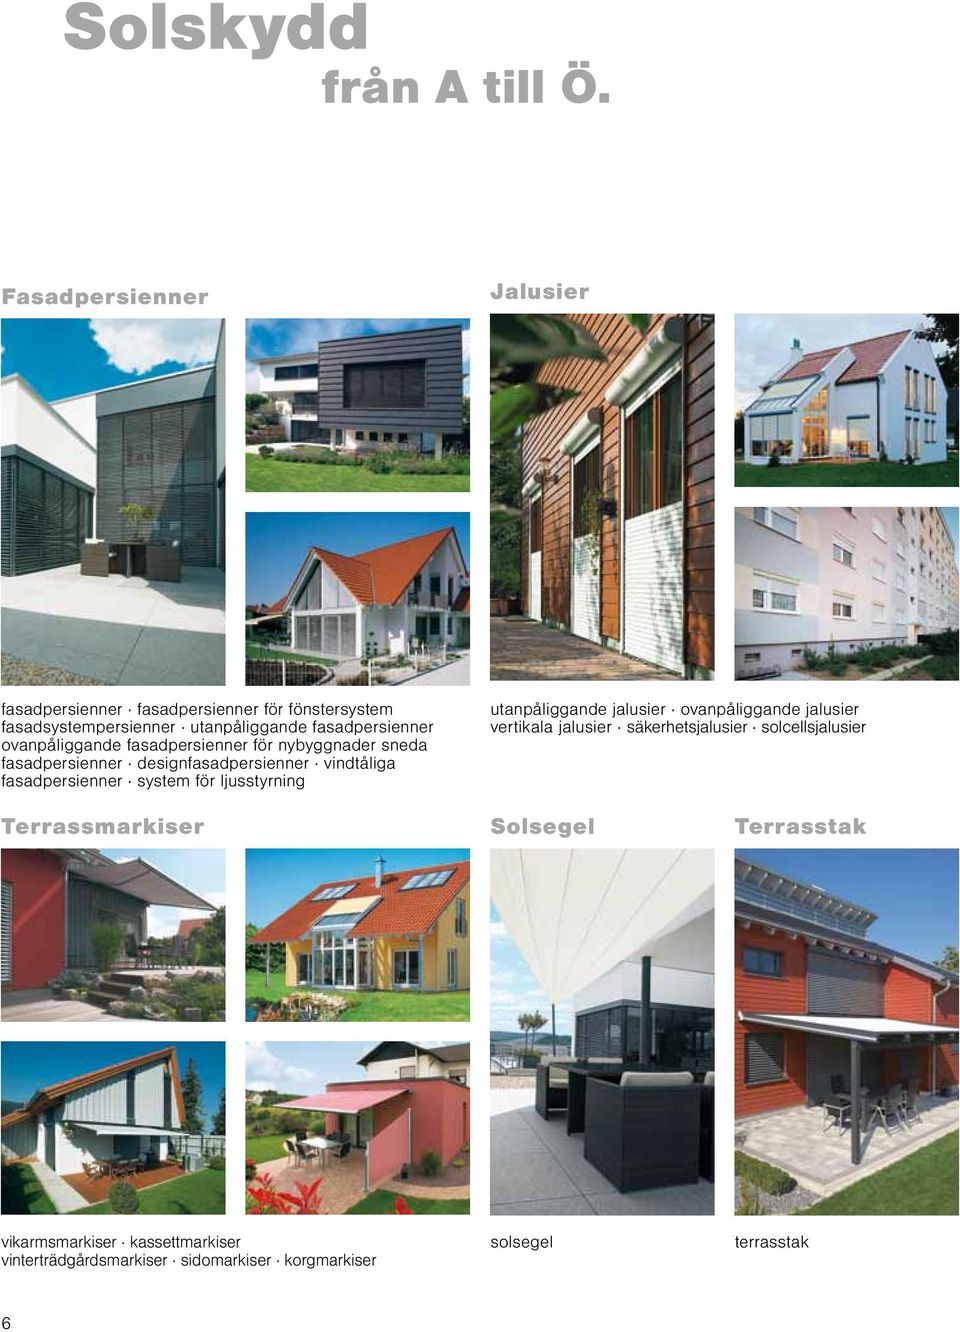 ovanpåliggande fasadpersienner för nybyggnader sneda fasadpersienner designfasadpersienner vindtåliga fasadpersienner system för